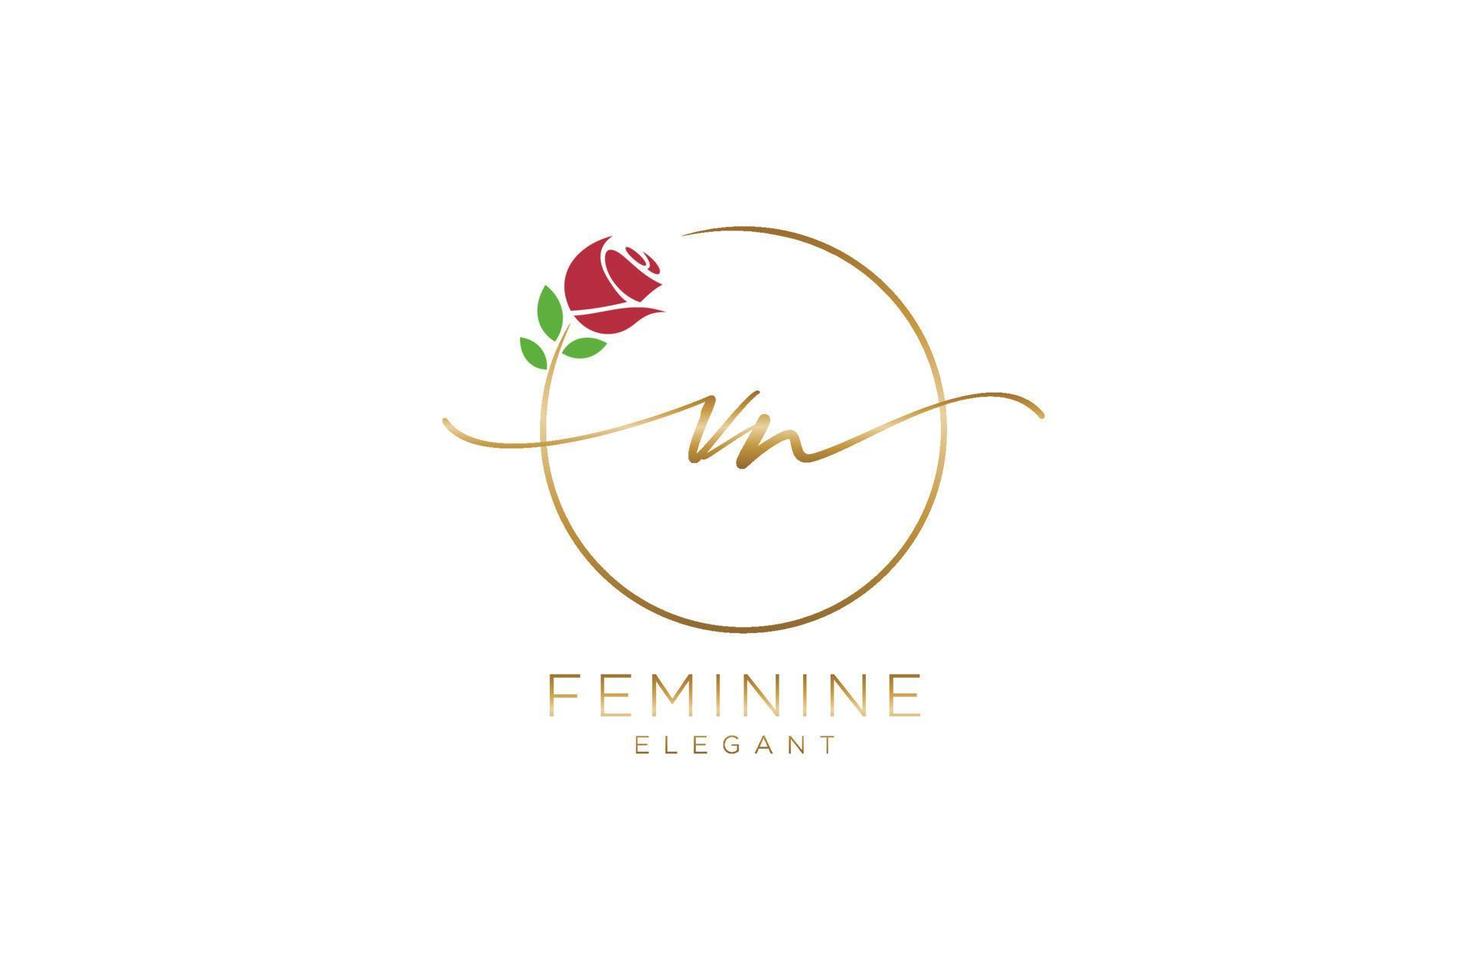 monogramme de beauté initial du logo féminin vn et design élégant du logo, logo manuscrit de la signature initiale, mariage, mode, floral et botanique avec modèle créatif. vecteur